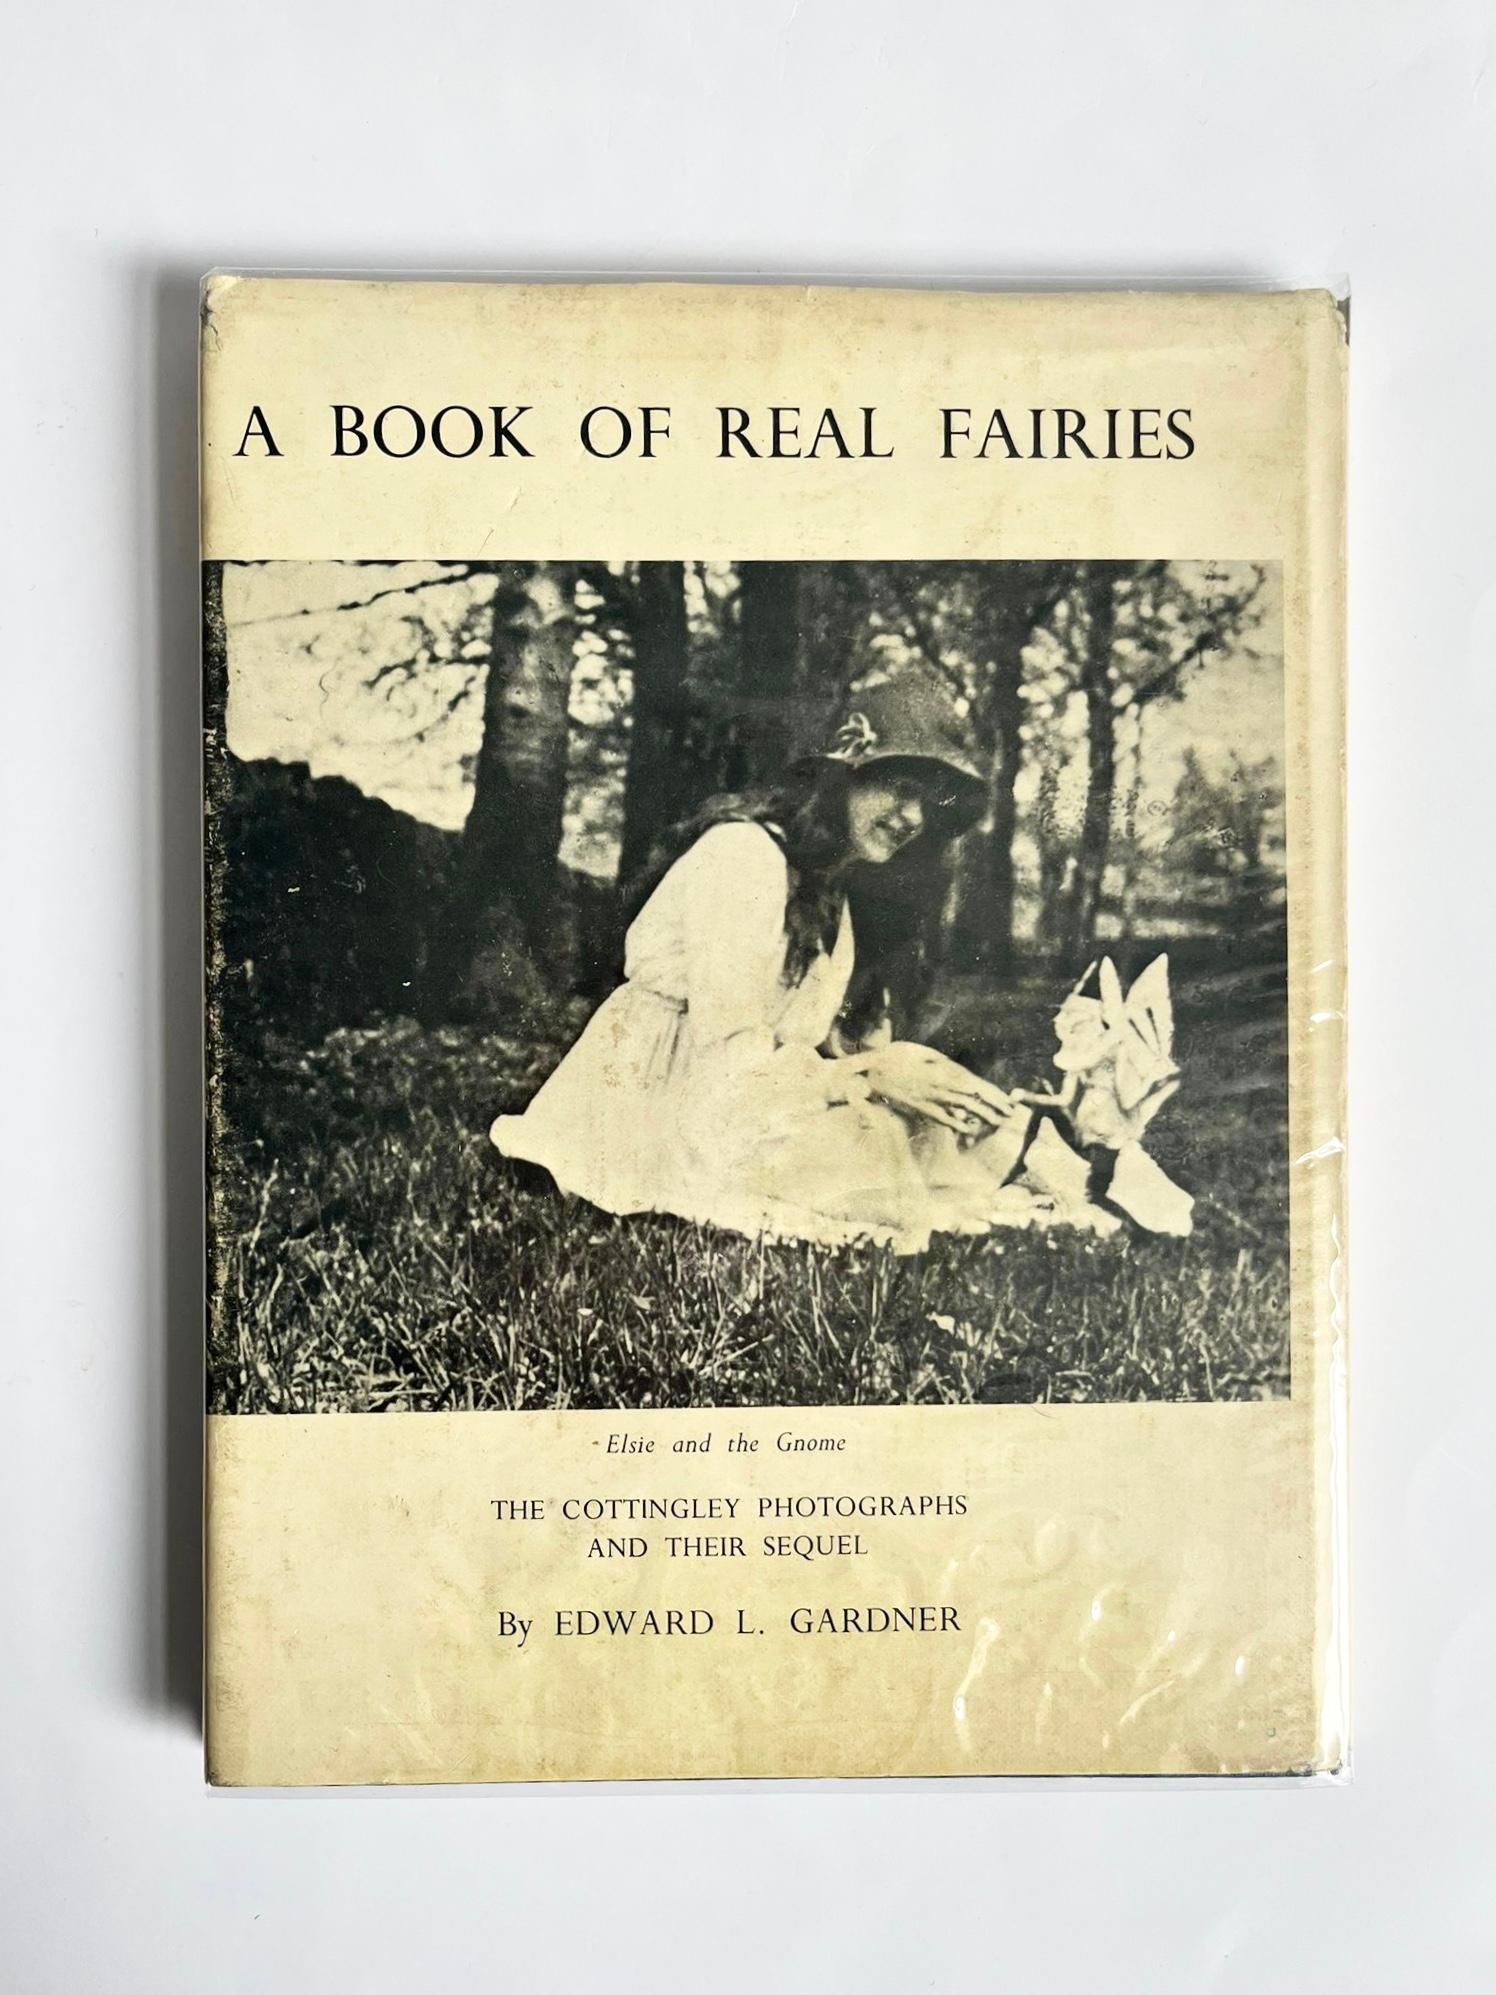 Fairies: A Book of Real Fairies by Edward L. Gardner